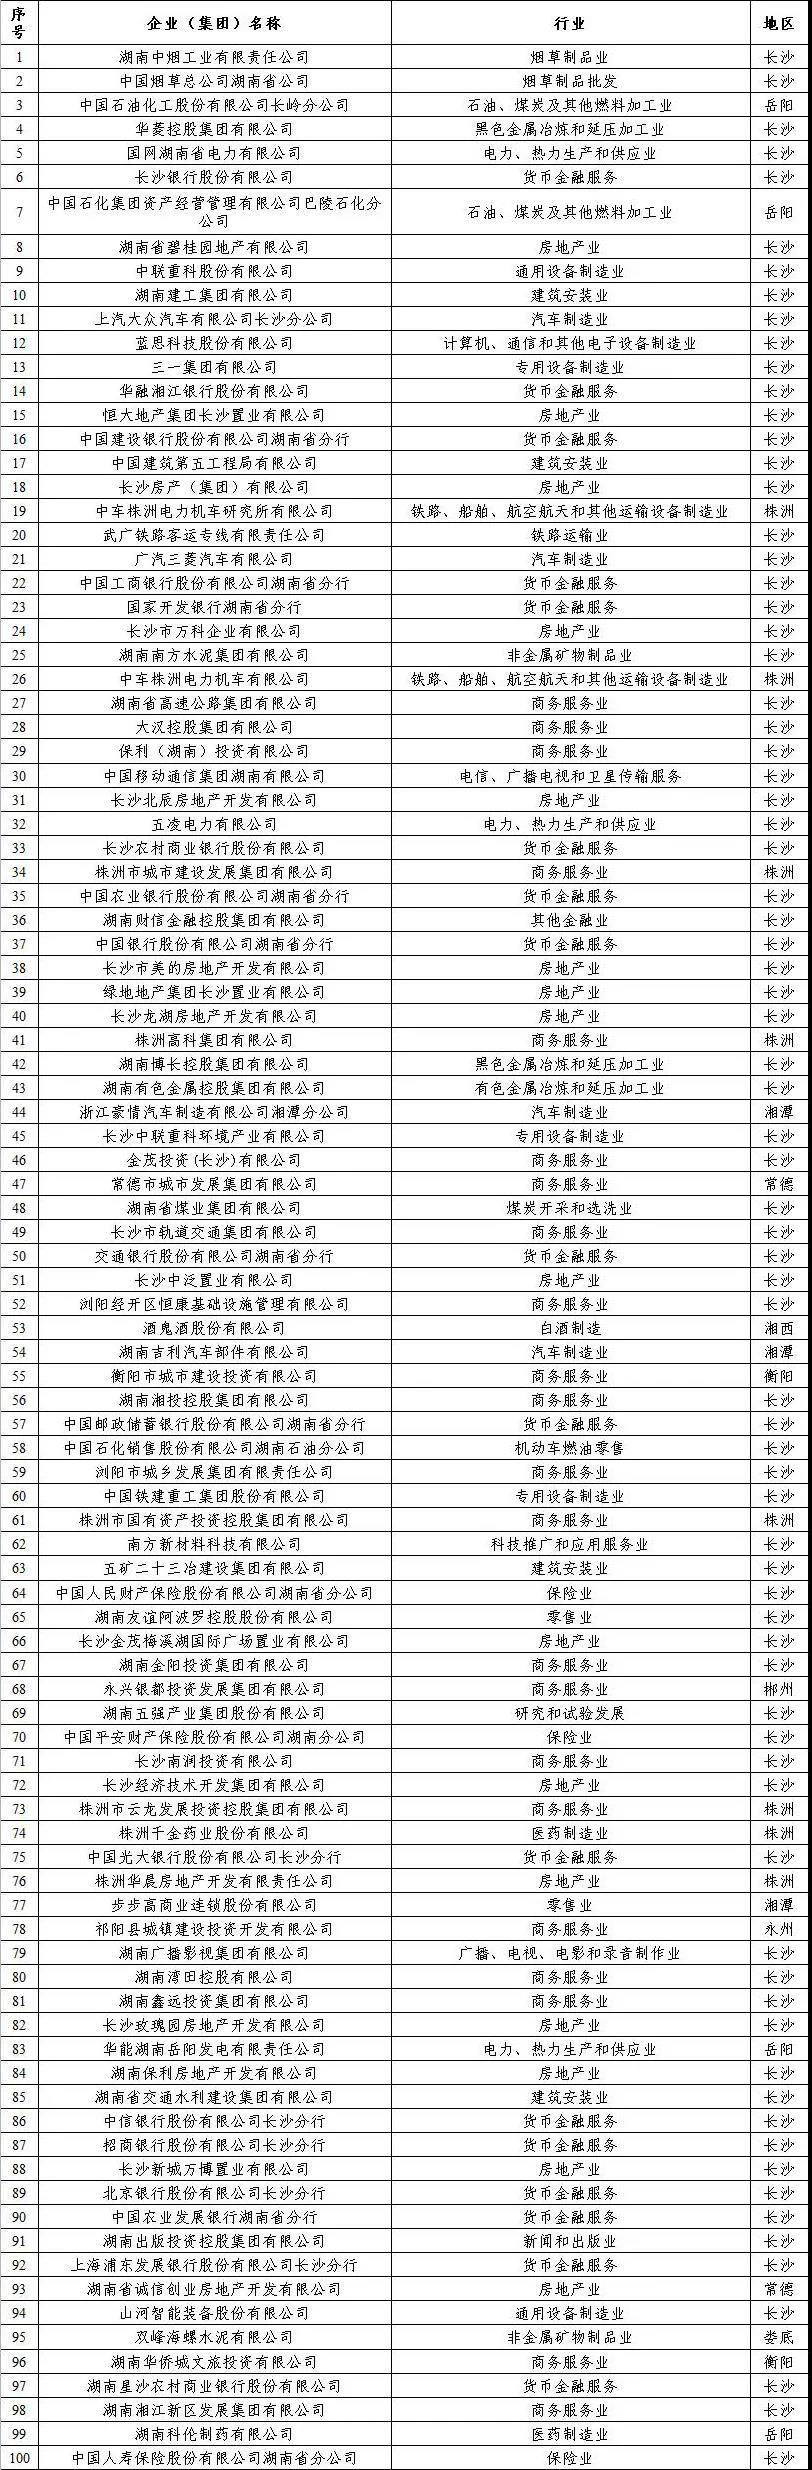 2019年度“湖南省企业税收贡献百强”榜单出炉